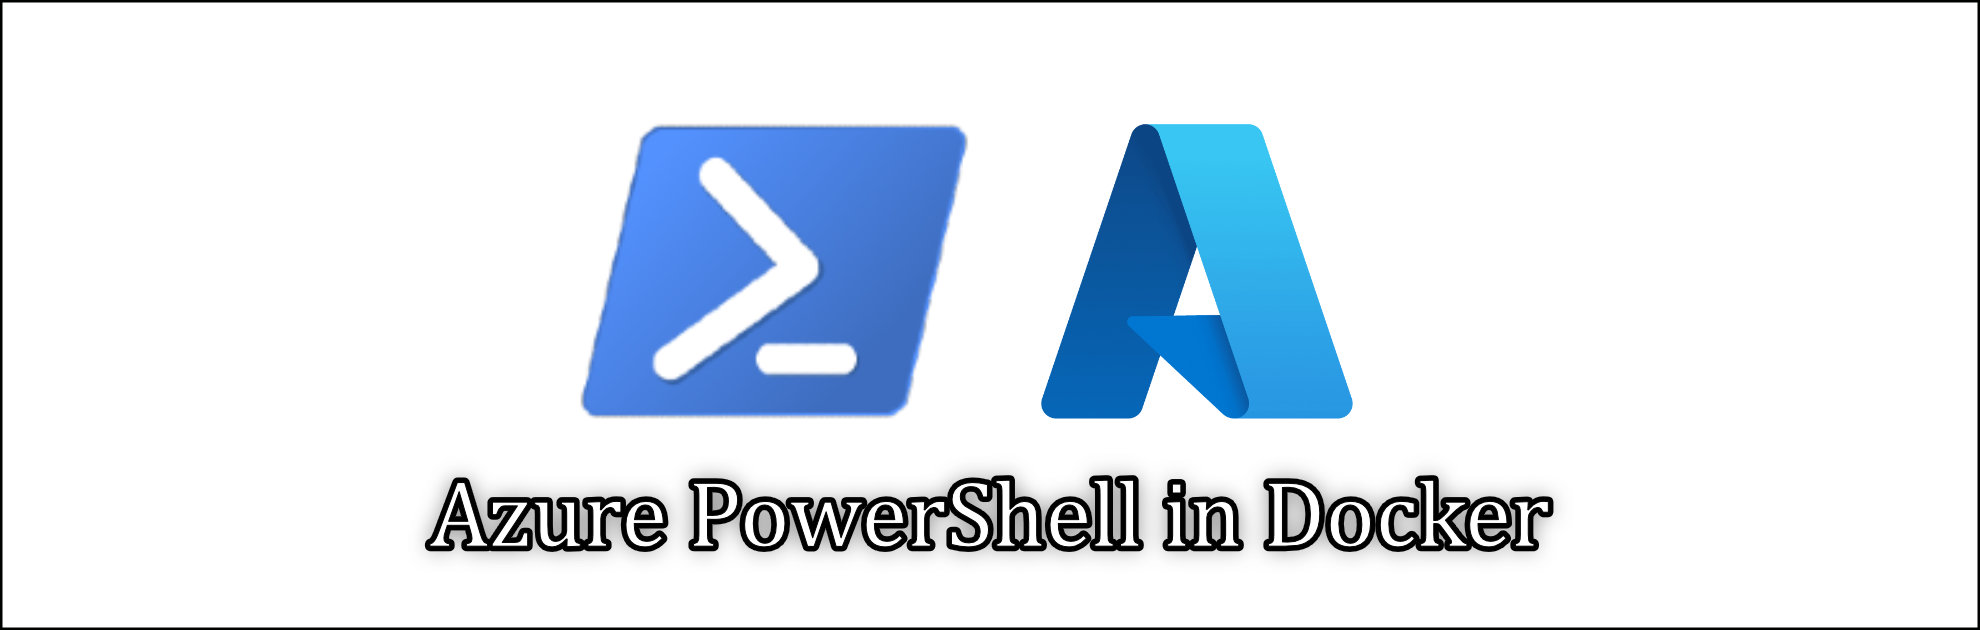 Azure PowerShell